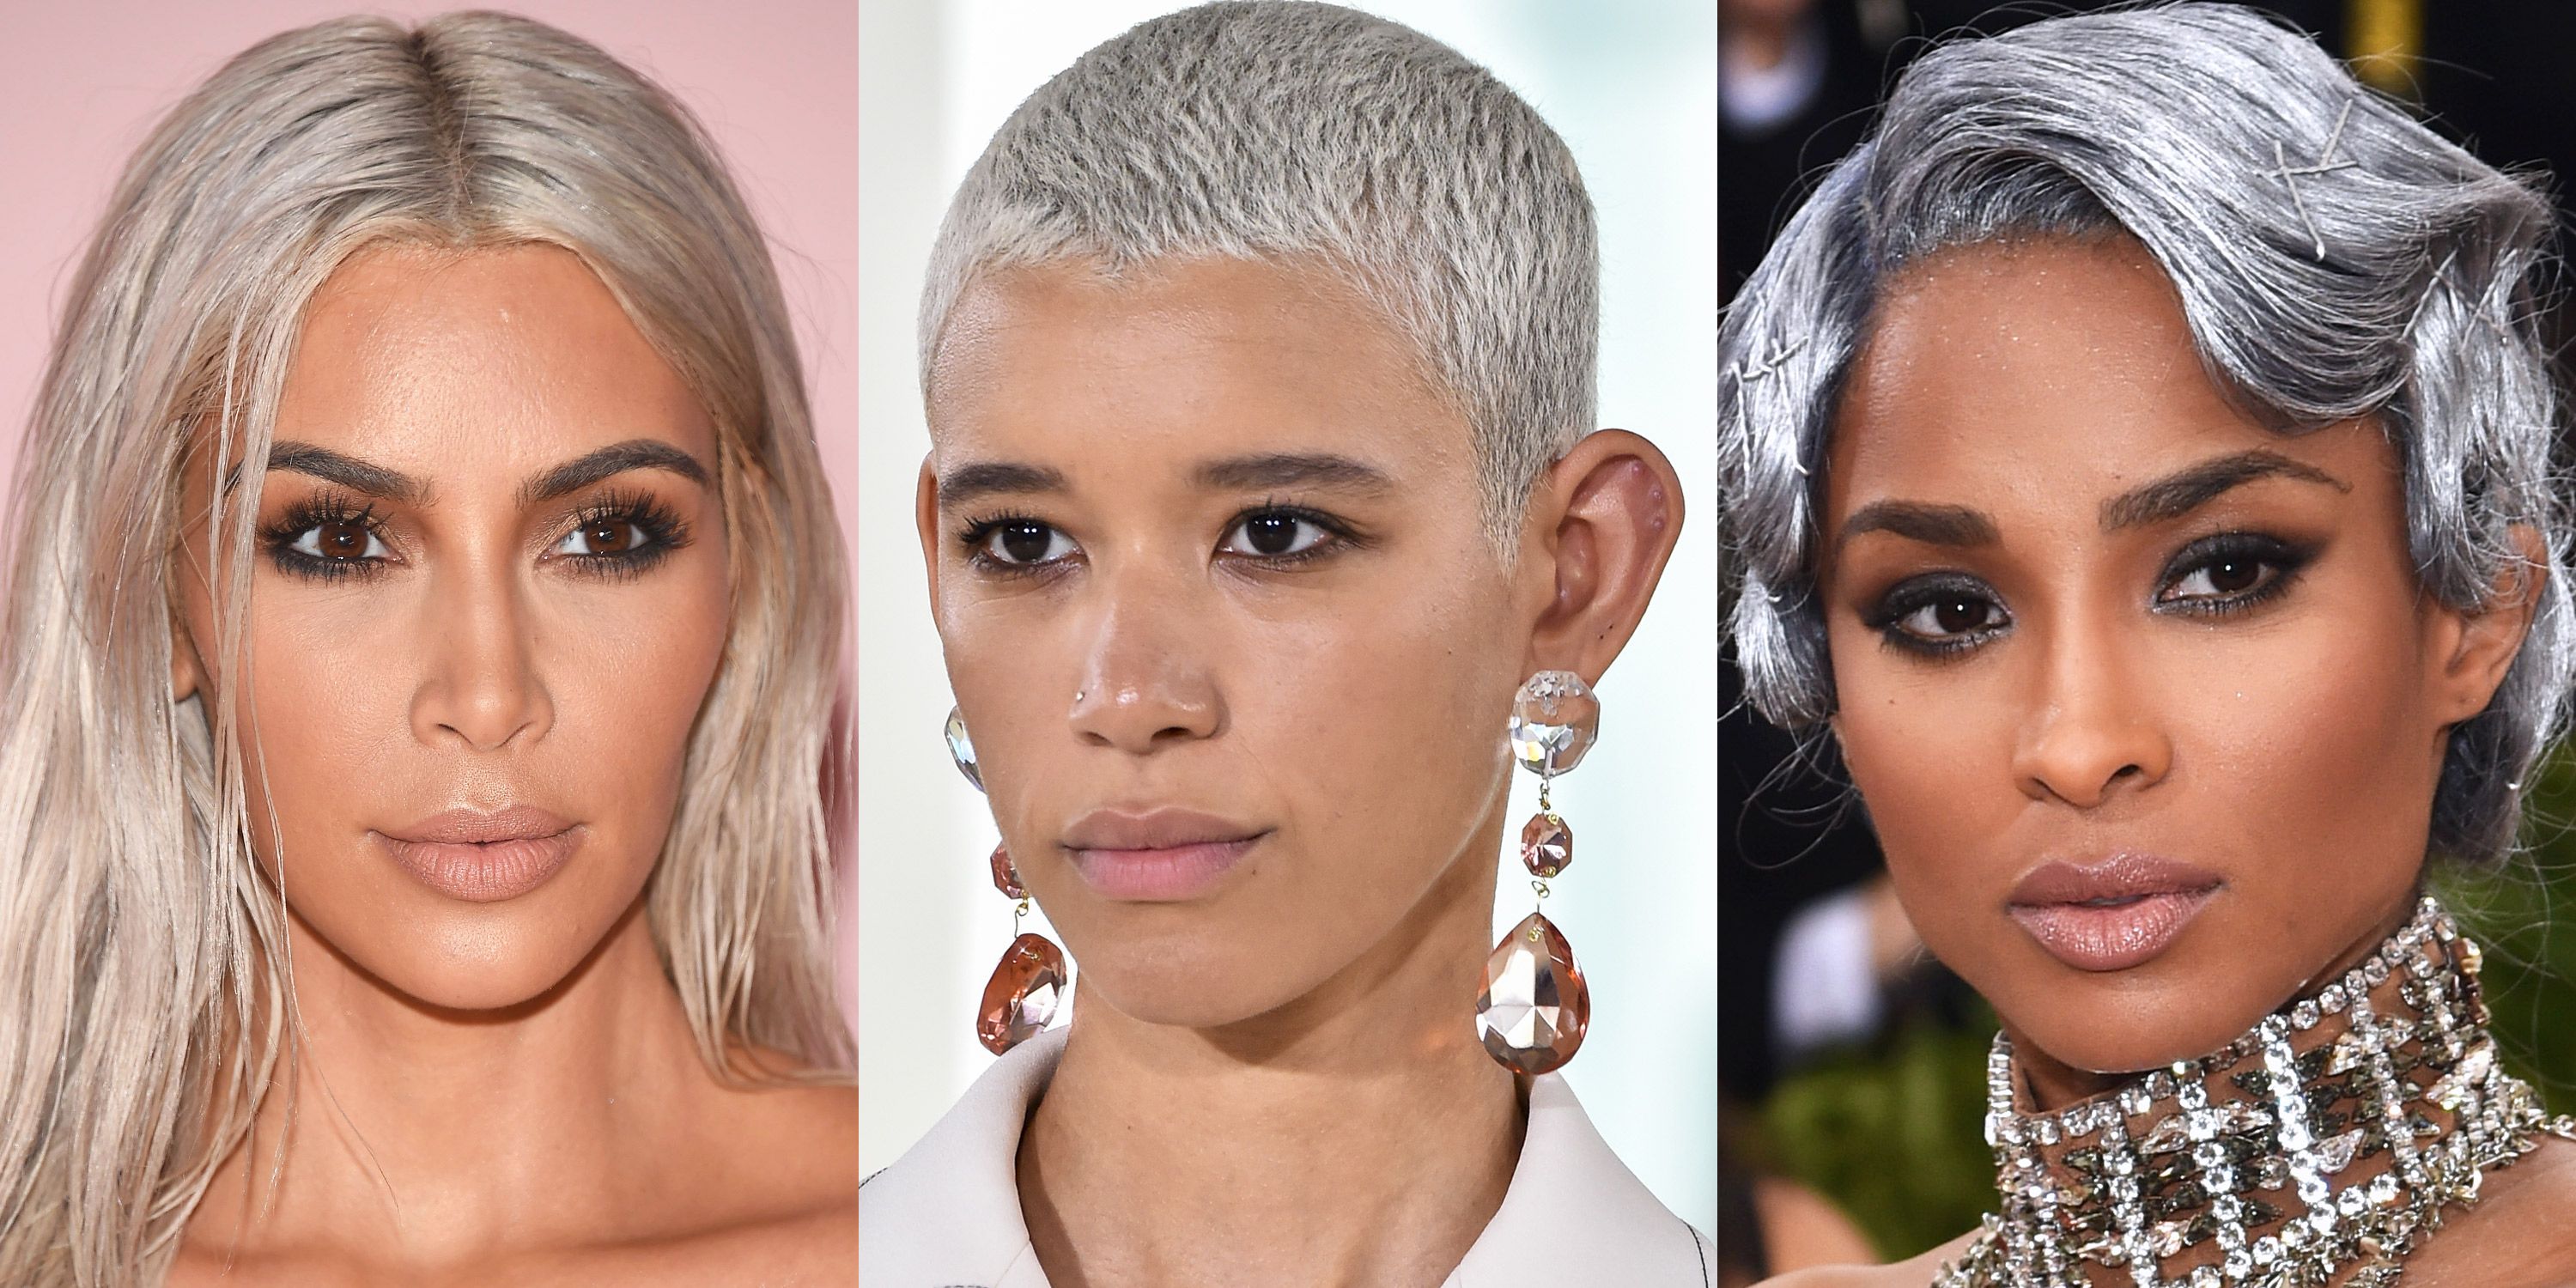 Silver Hair Idea Photos Celebrities With Gray Hair